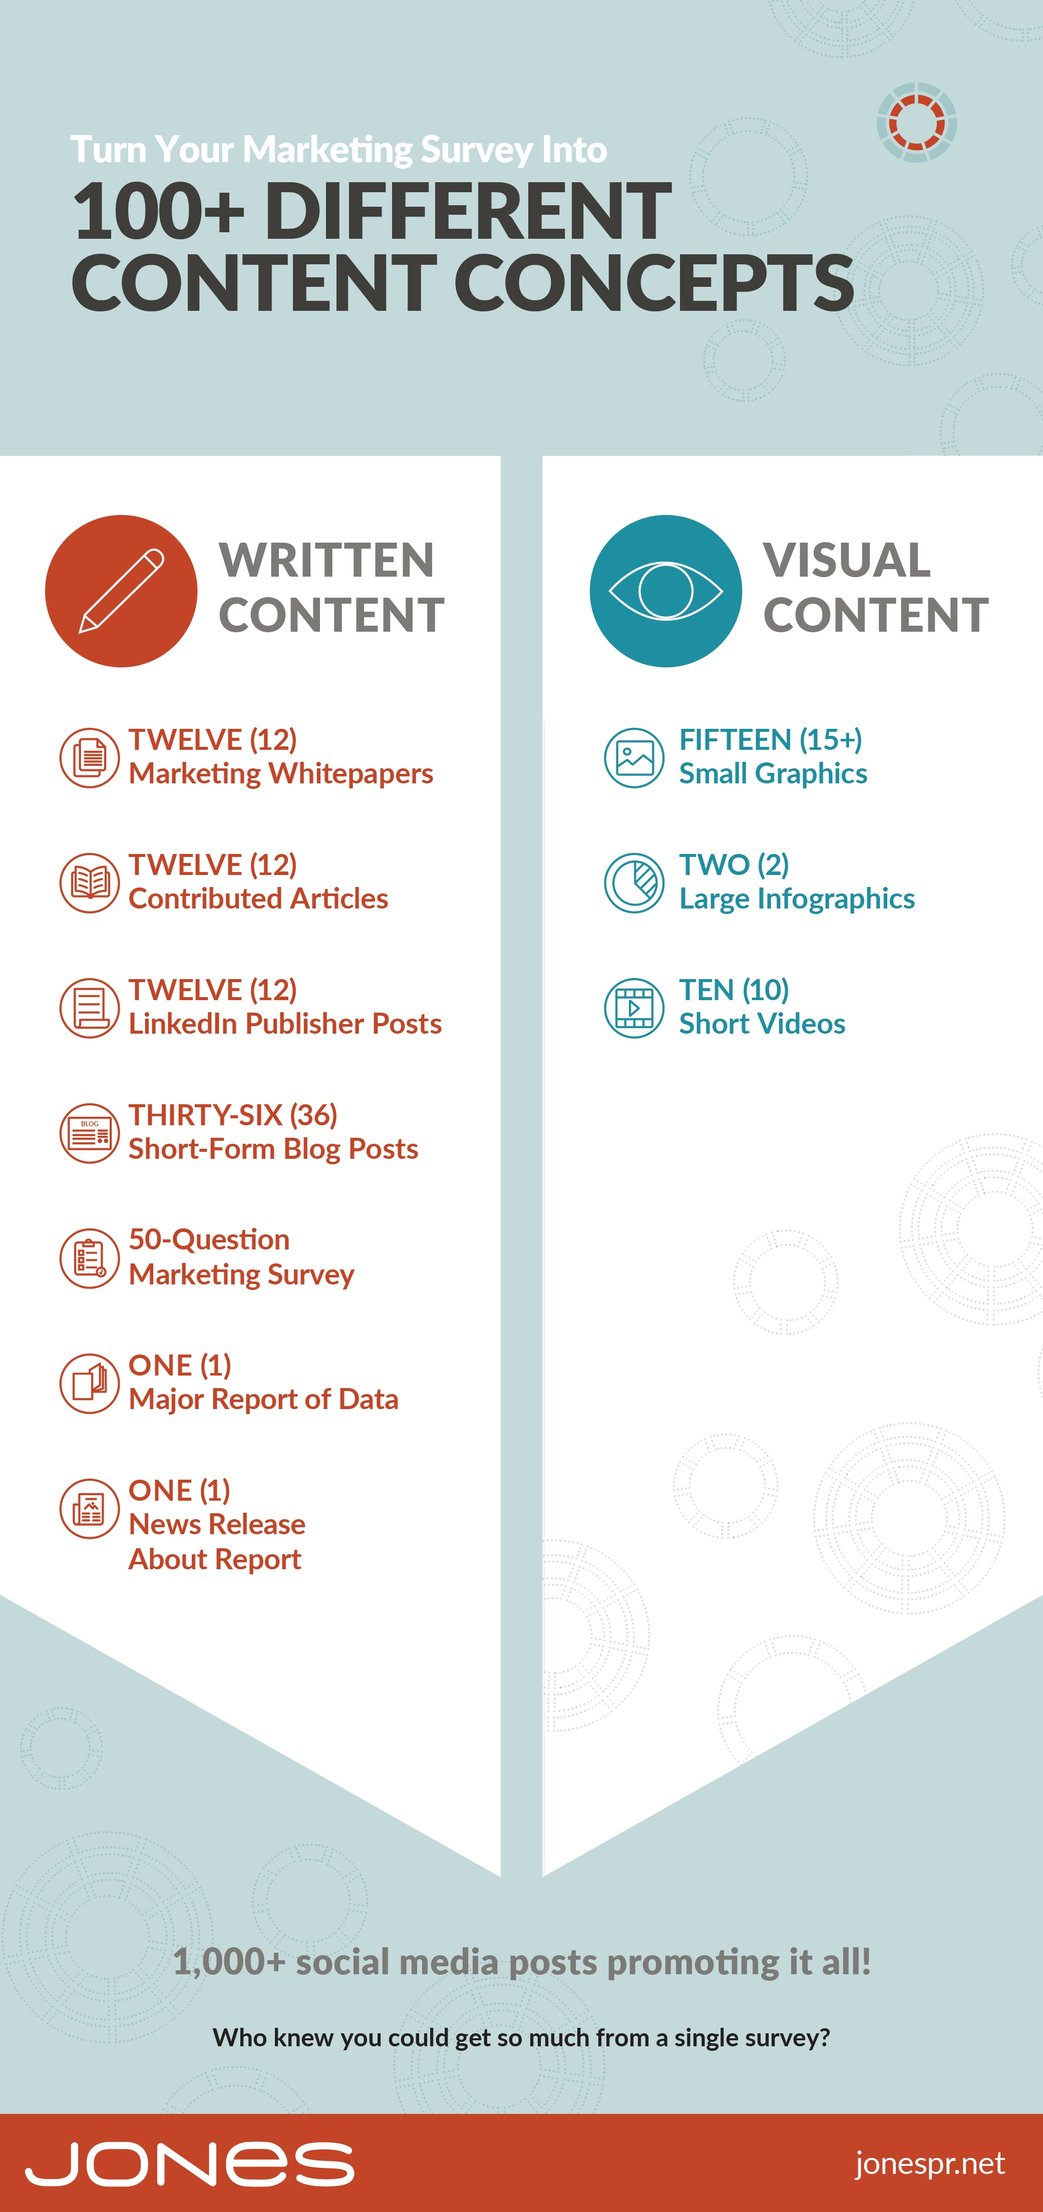 JONES-infographic-surveys-100-content-concepts-v2